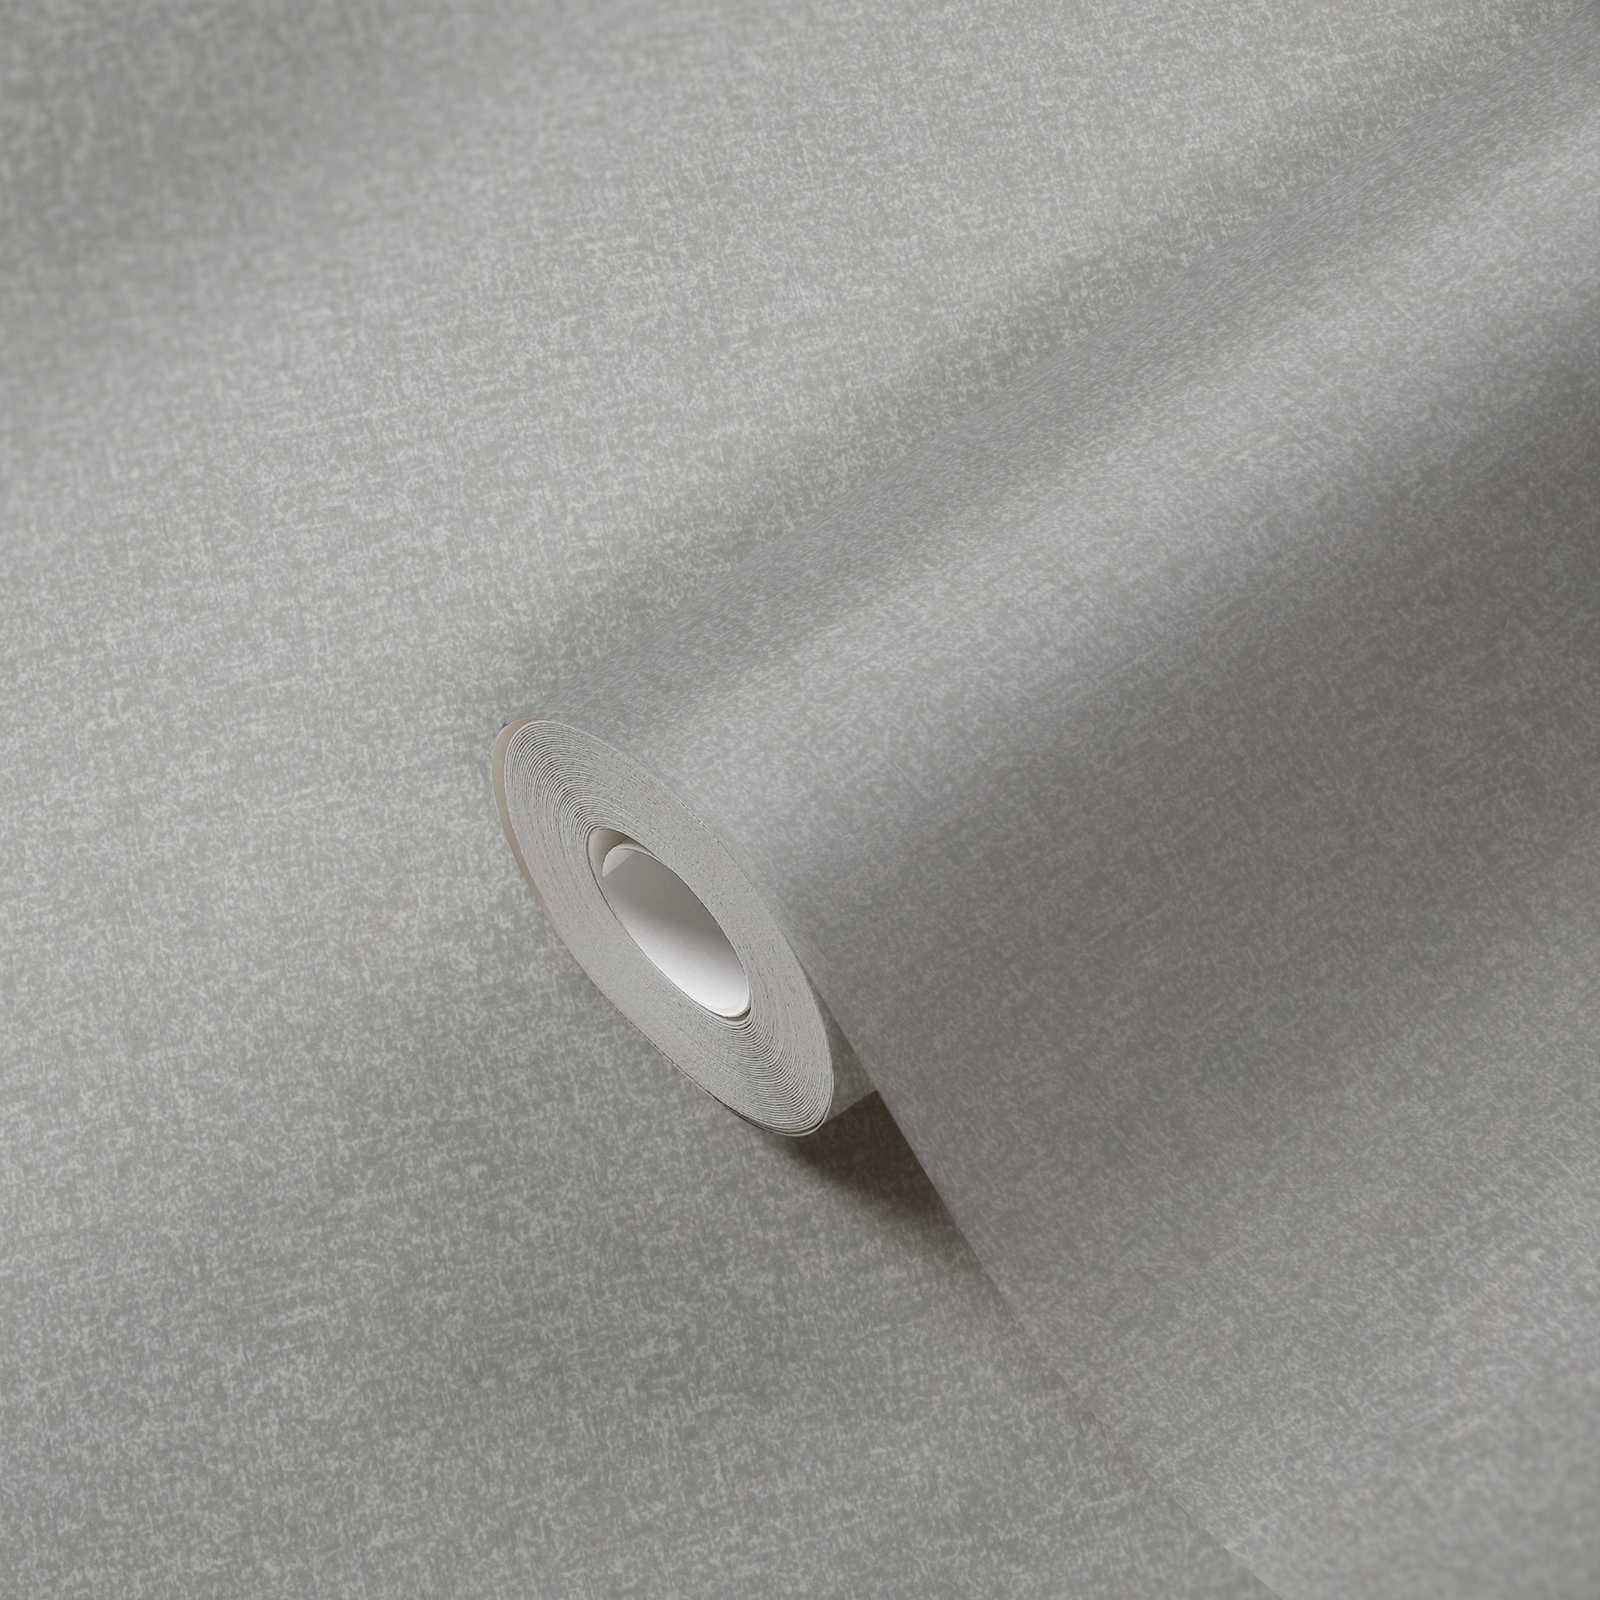             Vliesbehang effen met licht structuurpatroon - grijs
        